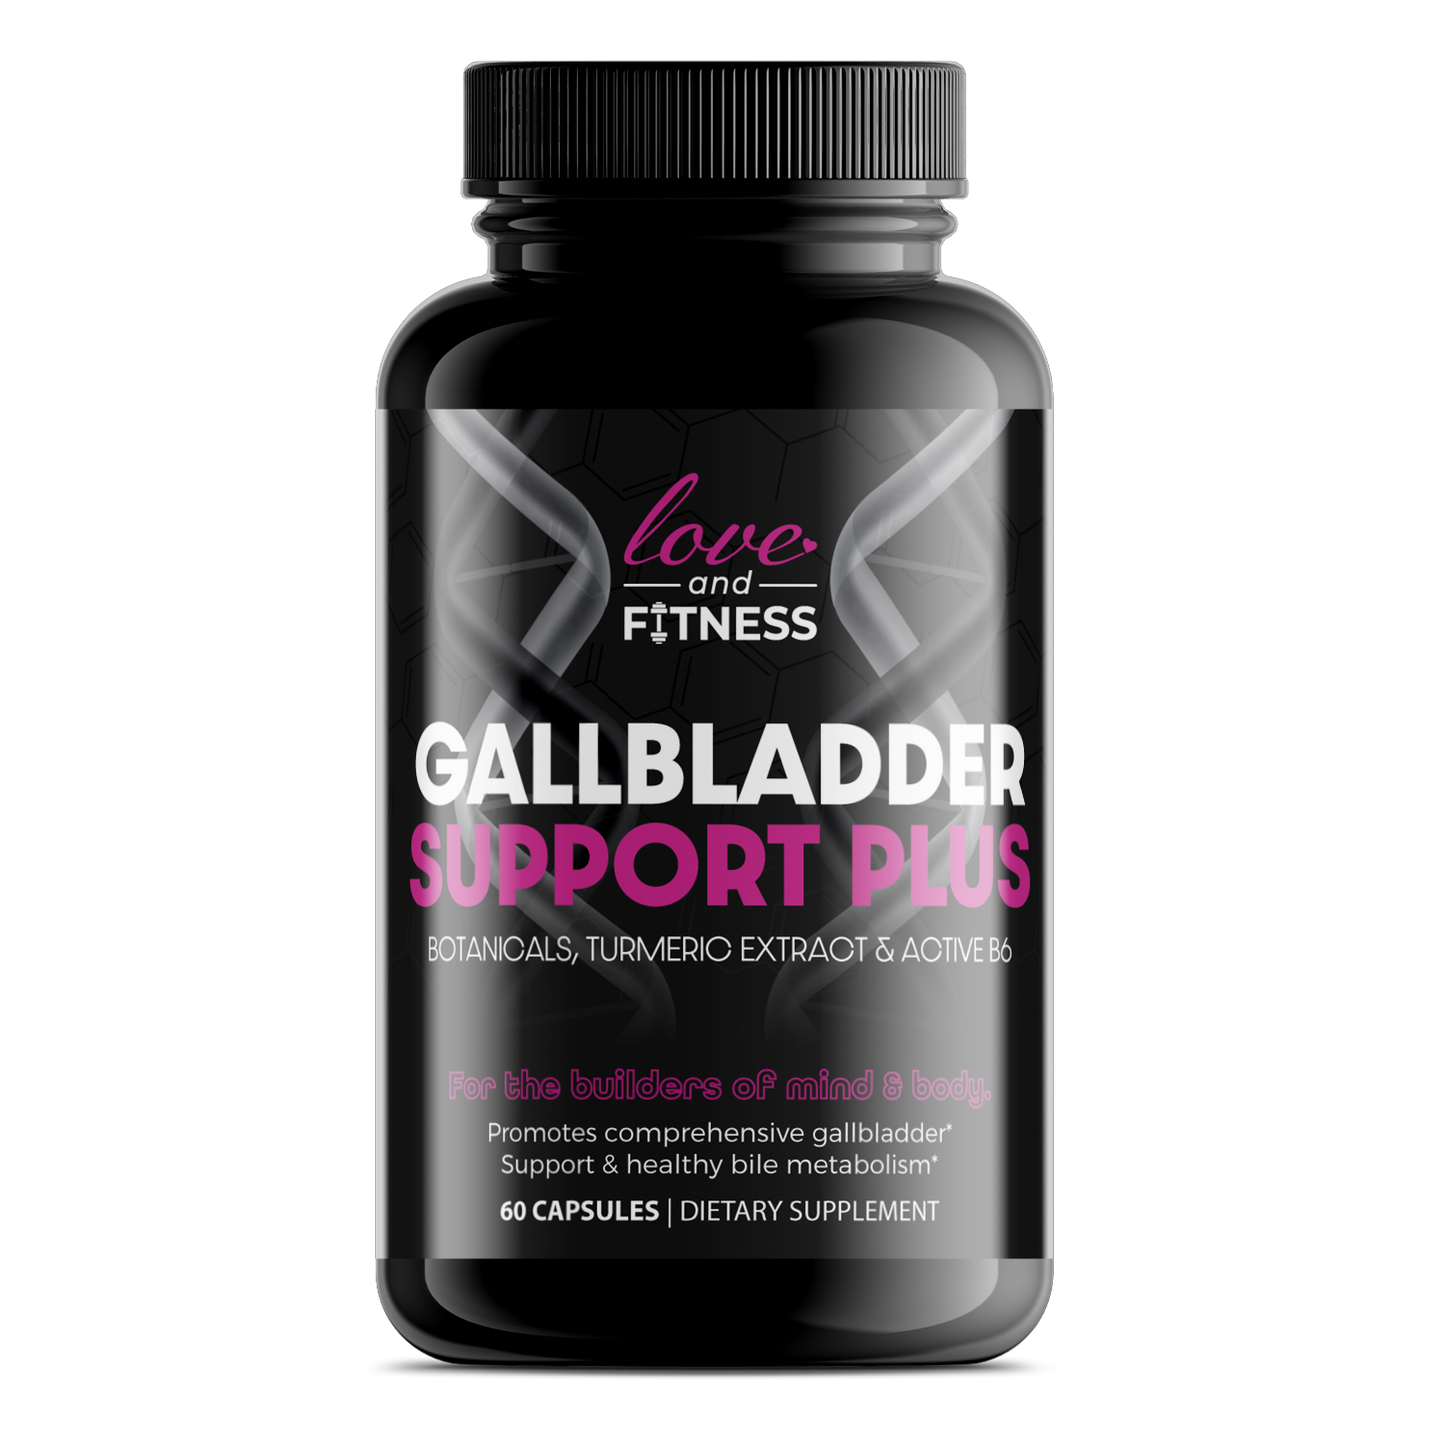 Gallbladder Support